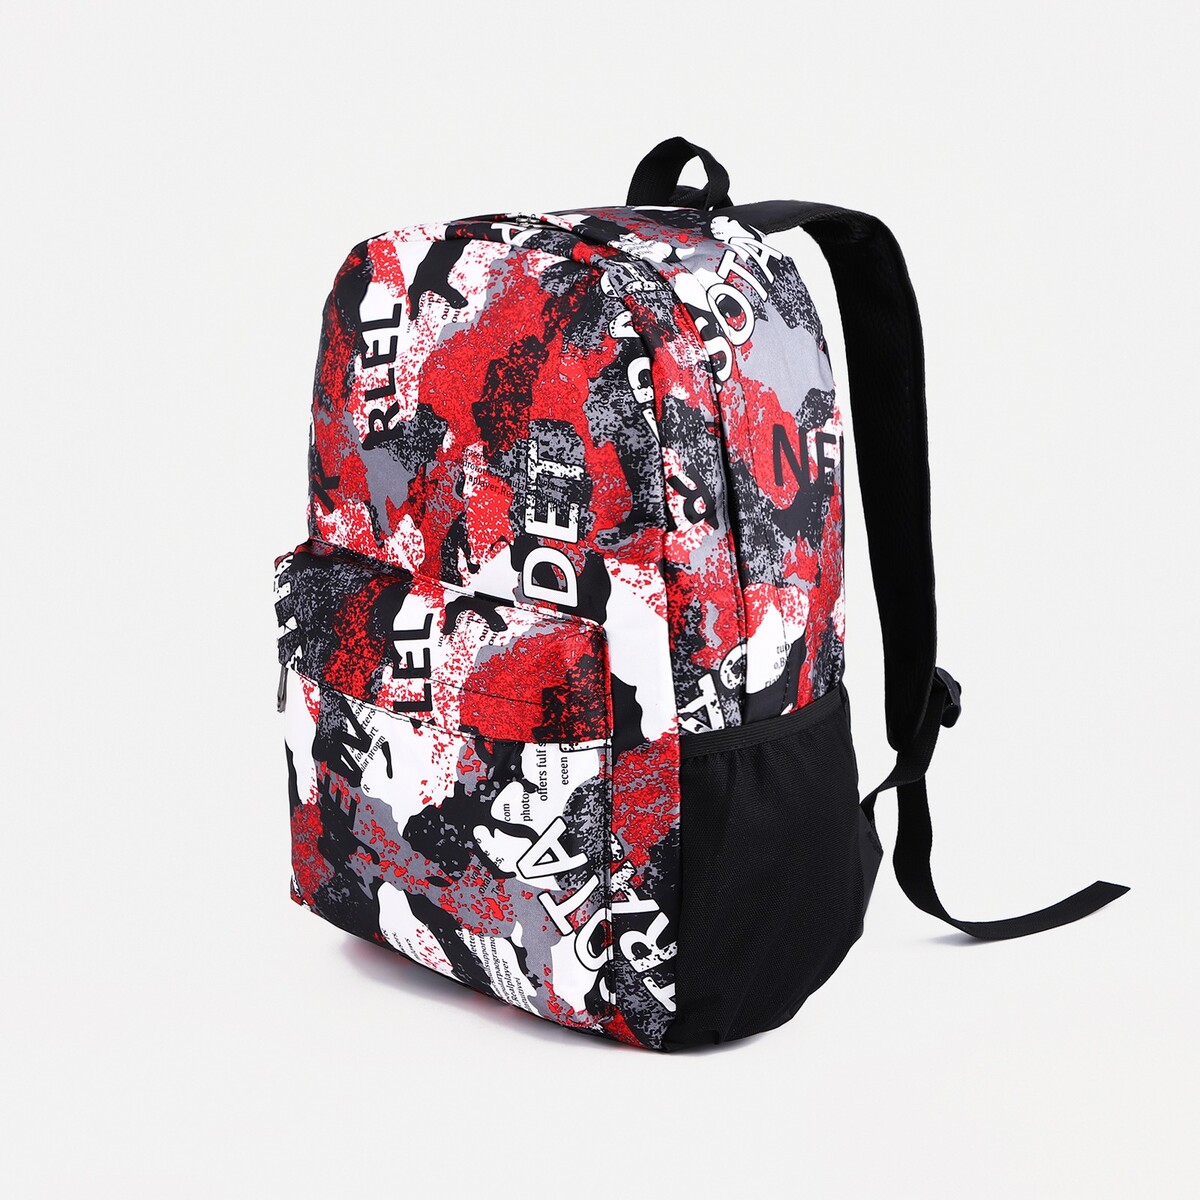 Рюкзак молодежный из текстиля, 3 кармана, цвет серый/красный рюкзак торба молодежный отдел на стяжке шнурком серый